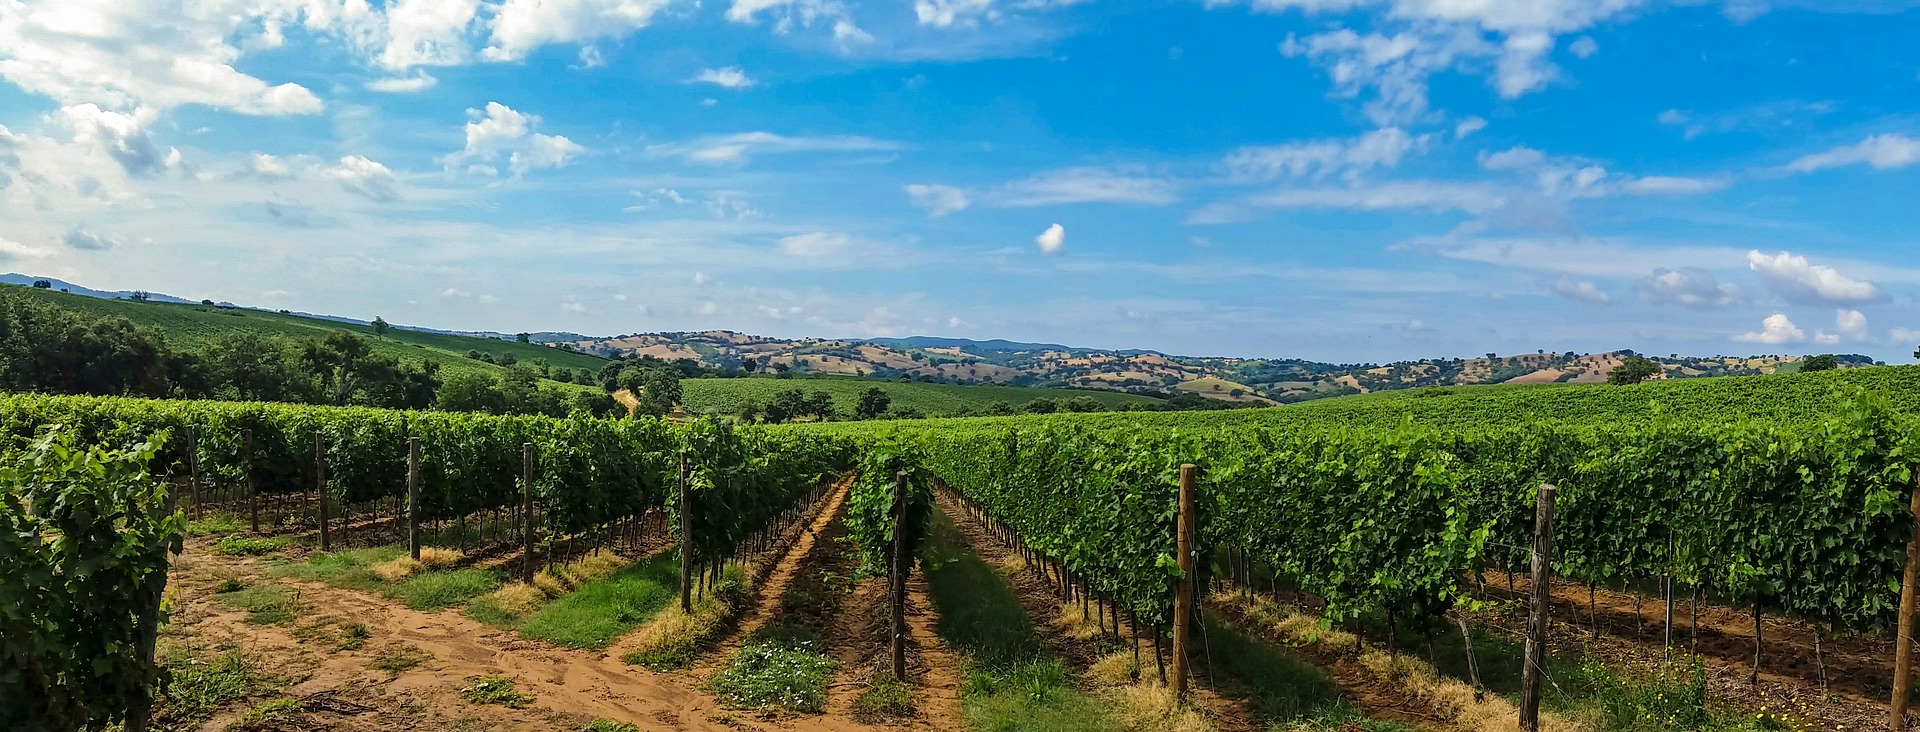 Toskanische saftig-grüne Rebzeilen unter strahlend blauem Himmel, im Hintergrund die charakteristische toskanische Hügellandschaft